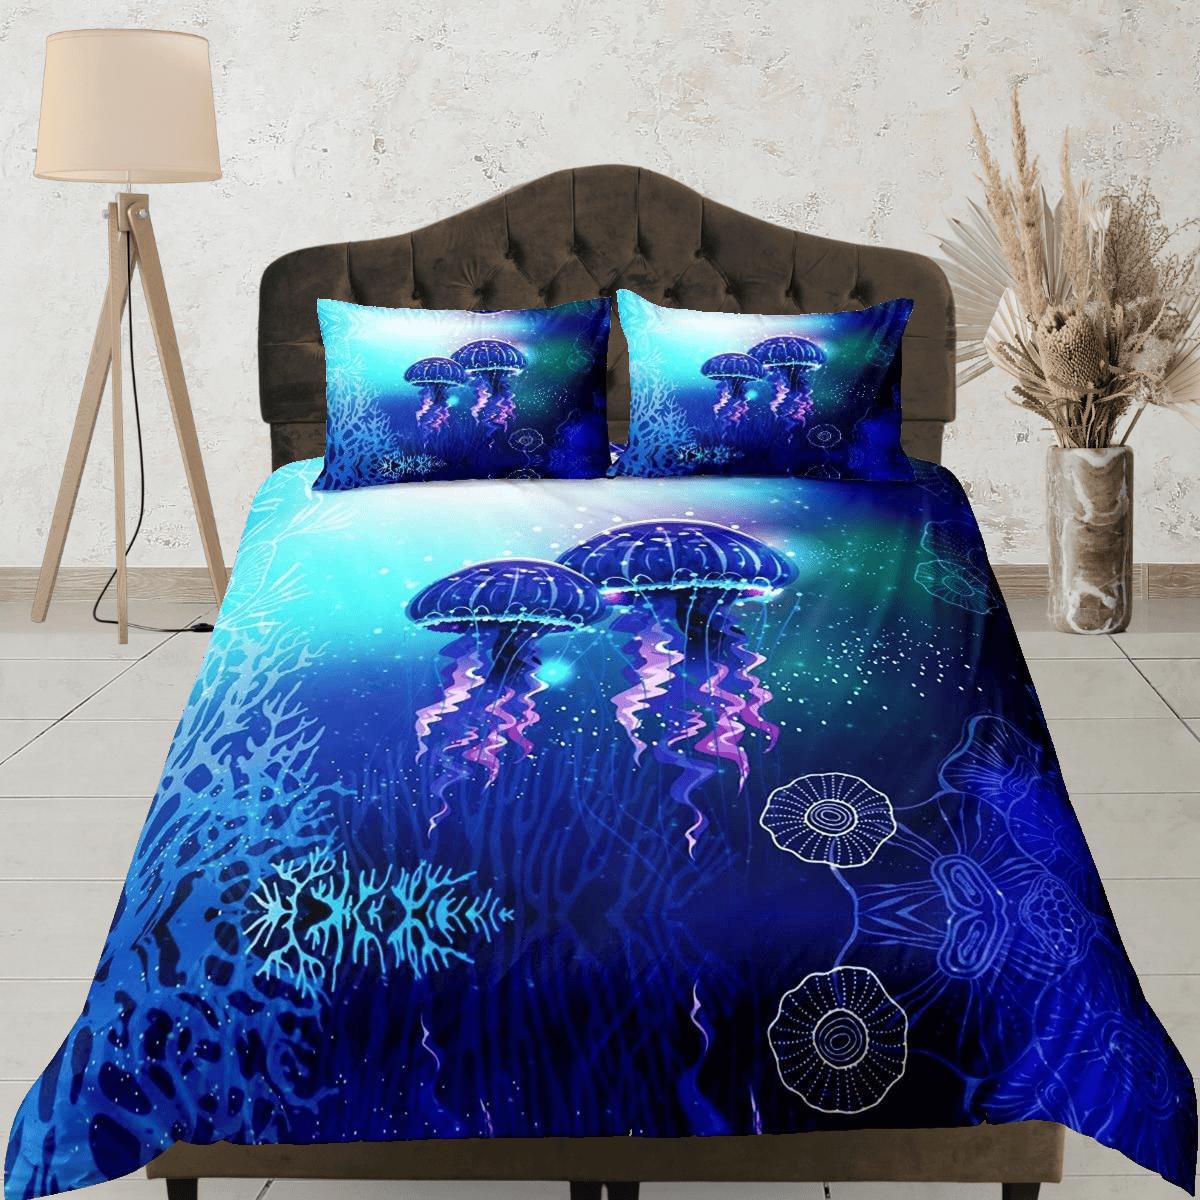 daintyduvet Lover jellyfish bedding blue duvet cover, ocean blush sea animal bedding set full king queen twin crib toddler, college dorm bedding gift